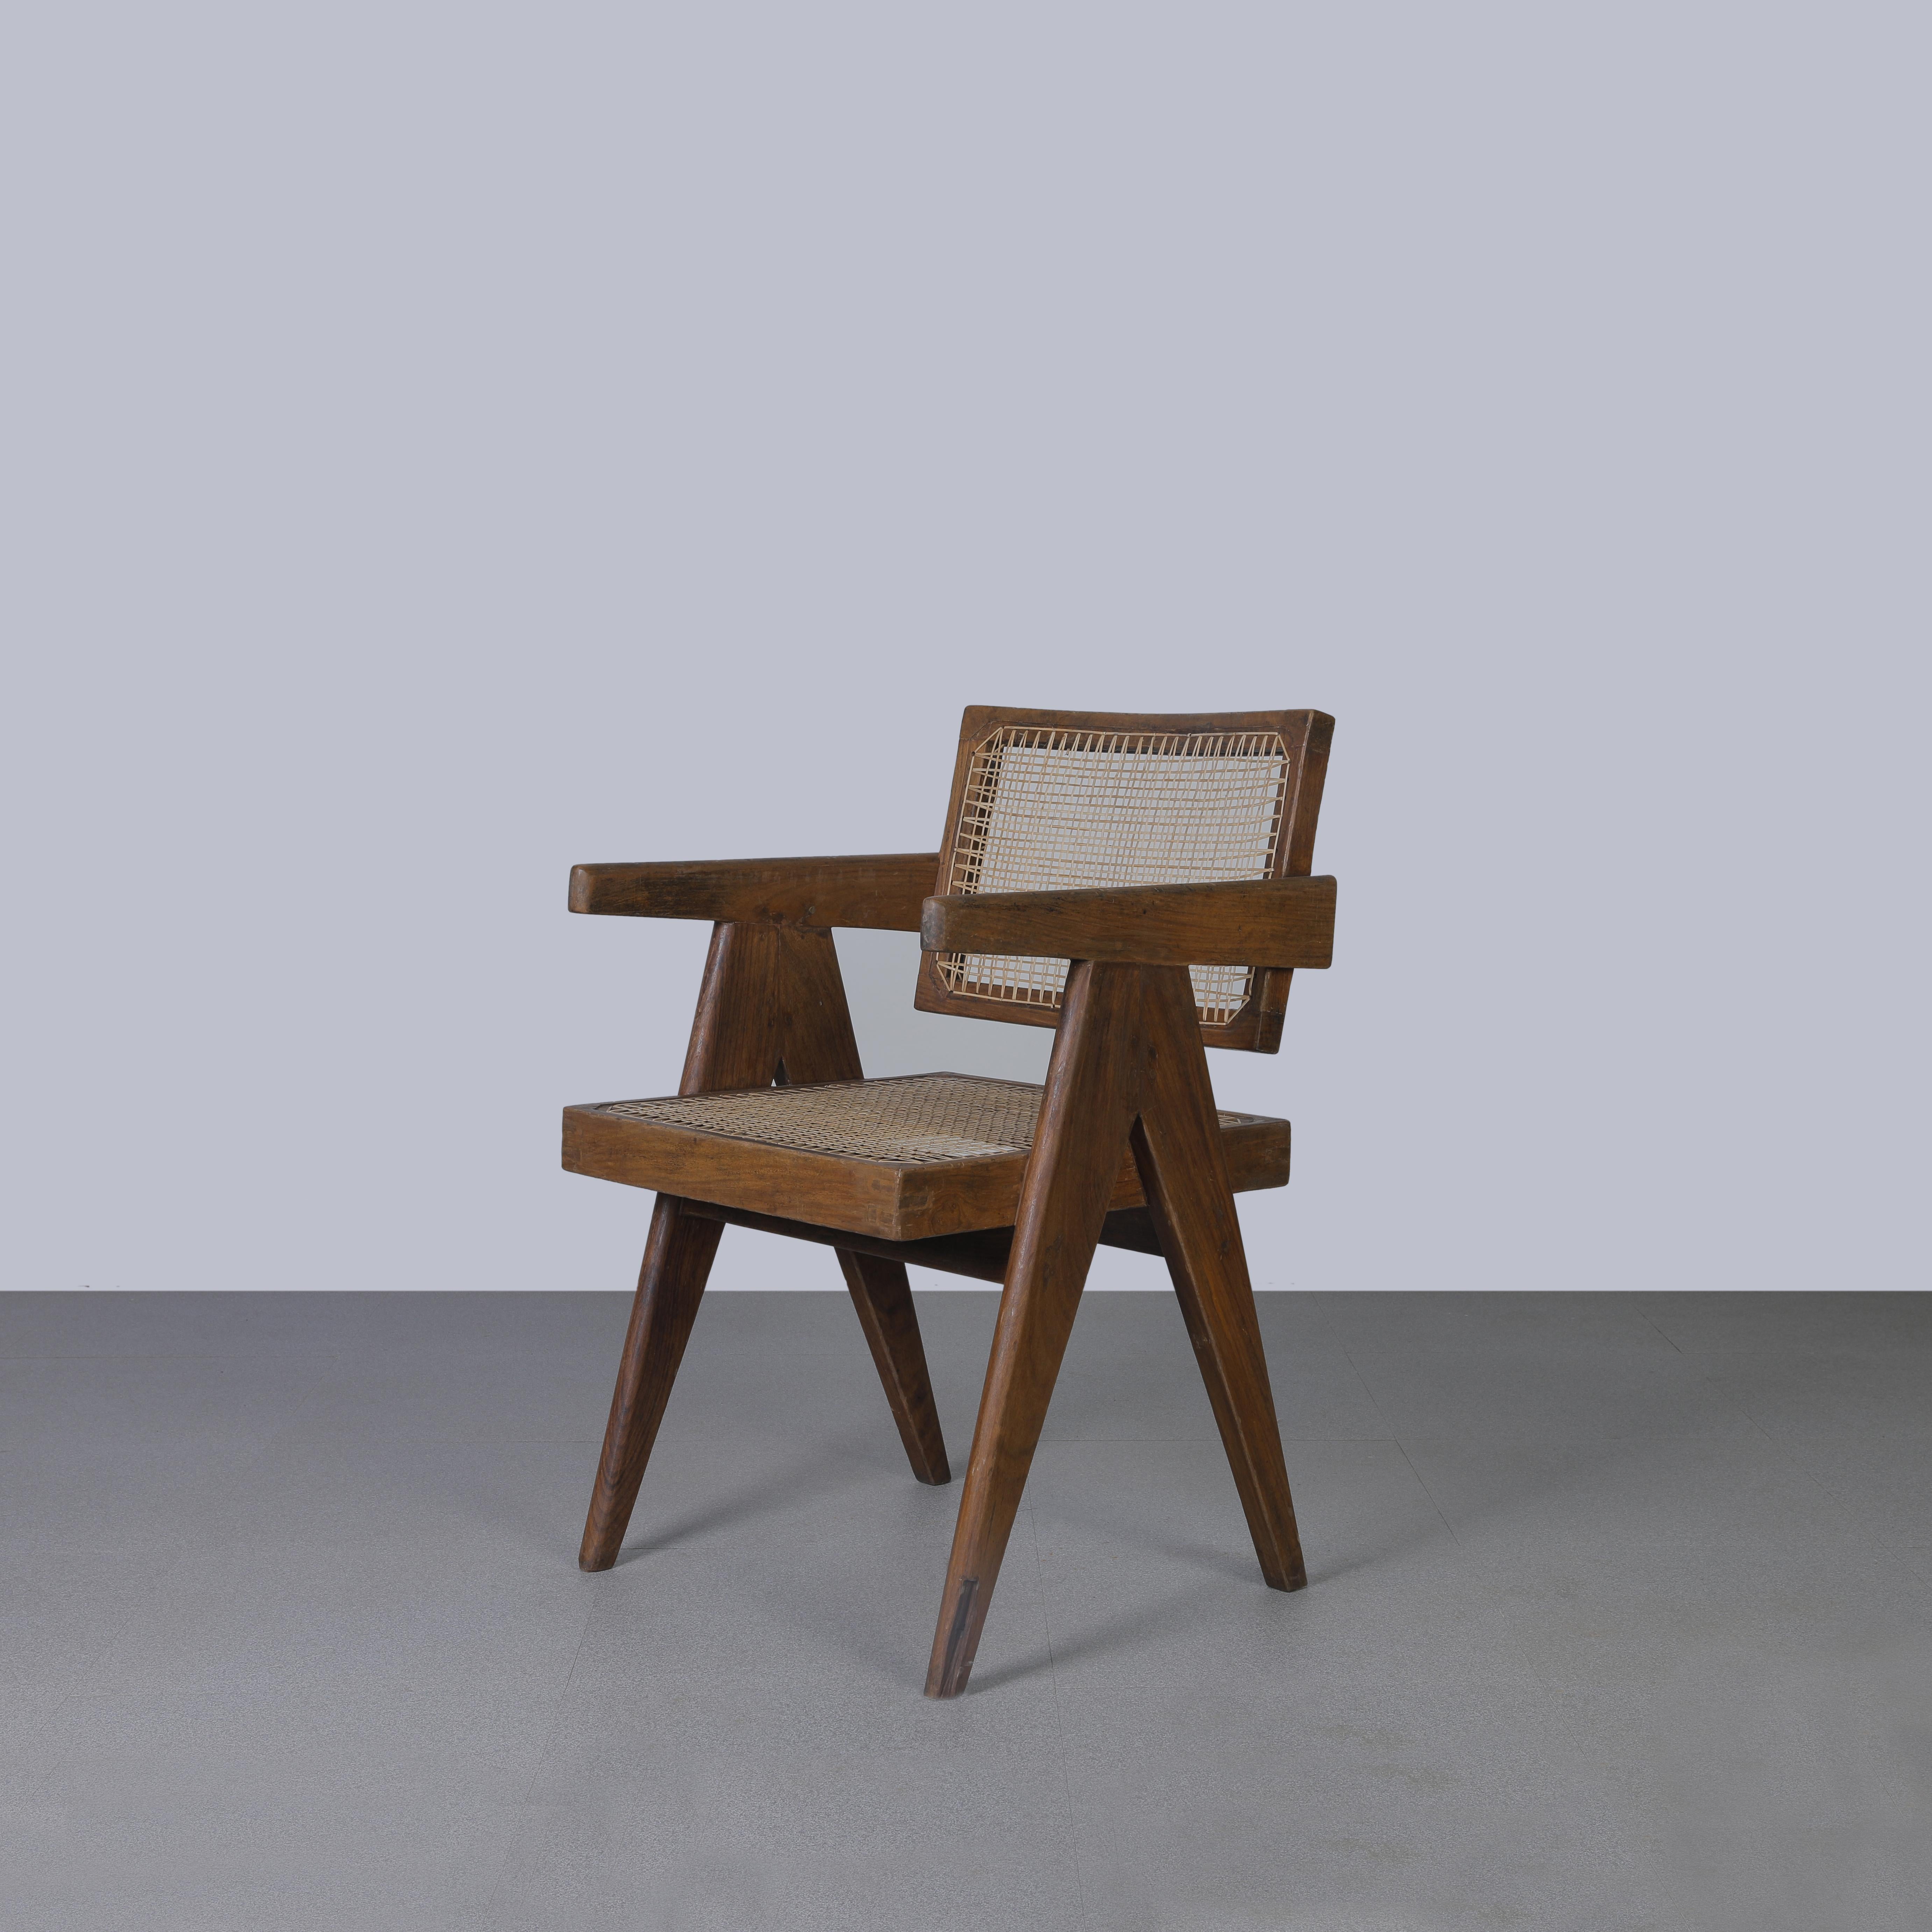 Cette chaise est une pièce emblématique du design. Il est brut dans sa simplicité et présente une matière légèrement patinée. Il est assez rugueux et a une couleur magnifique. Nous ne les restaurons pas trop. Nous conservons donc autant que possible